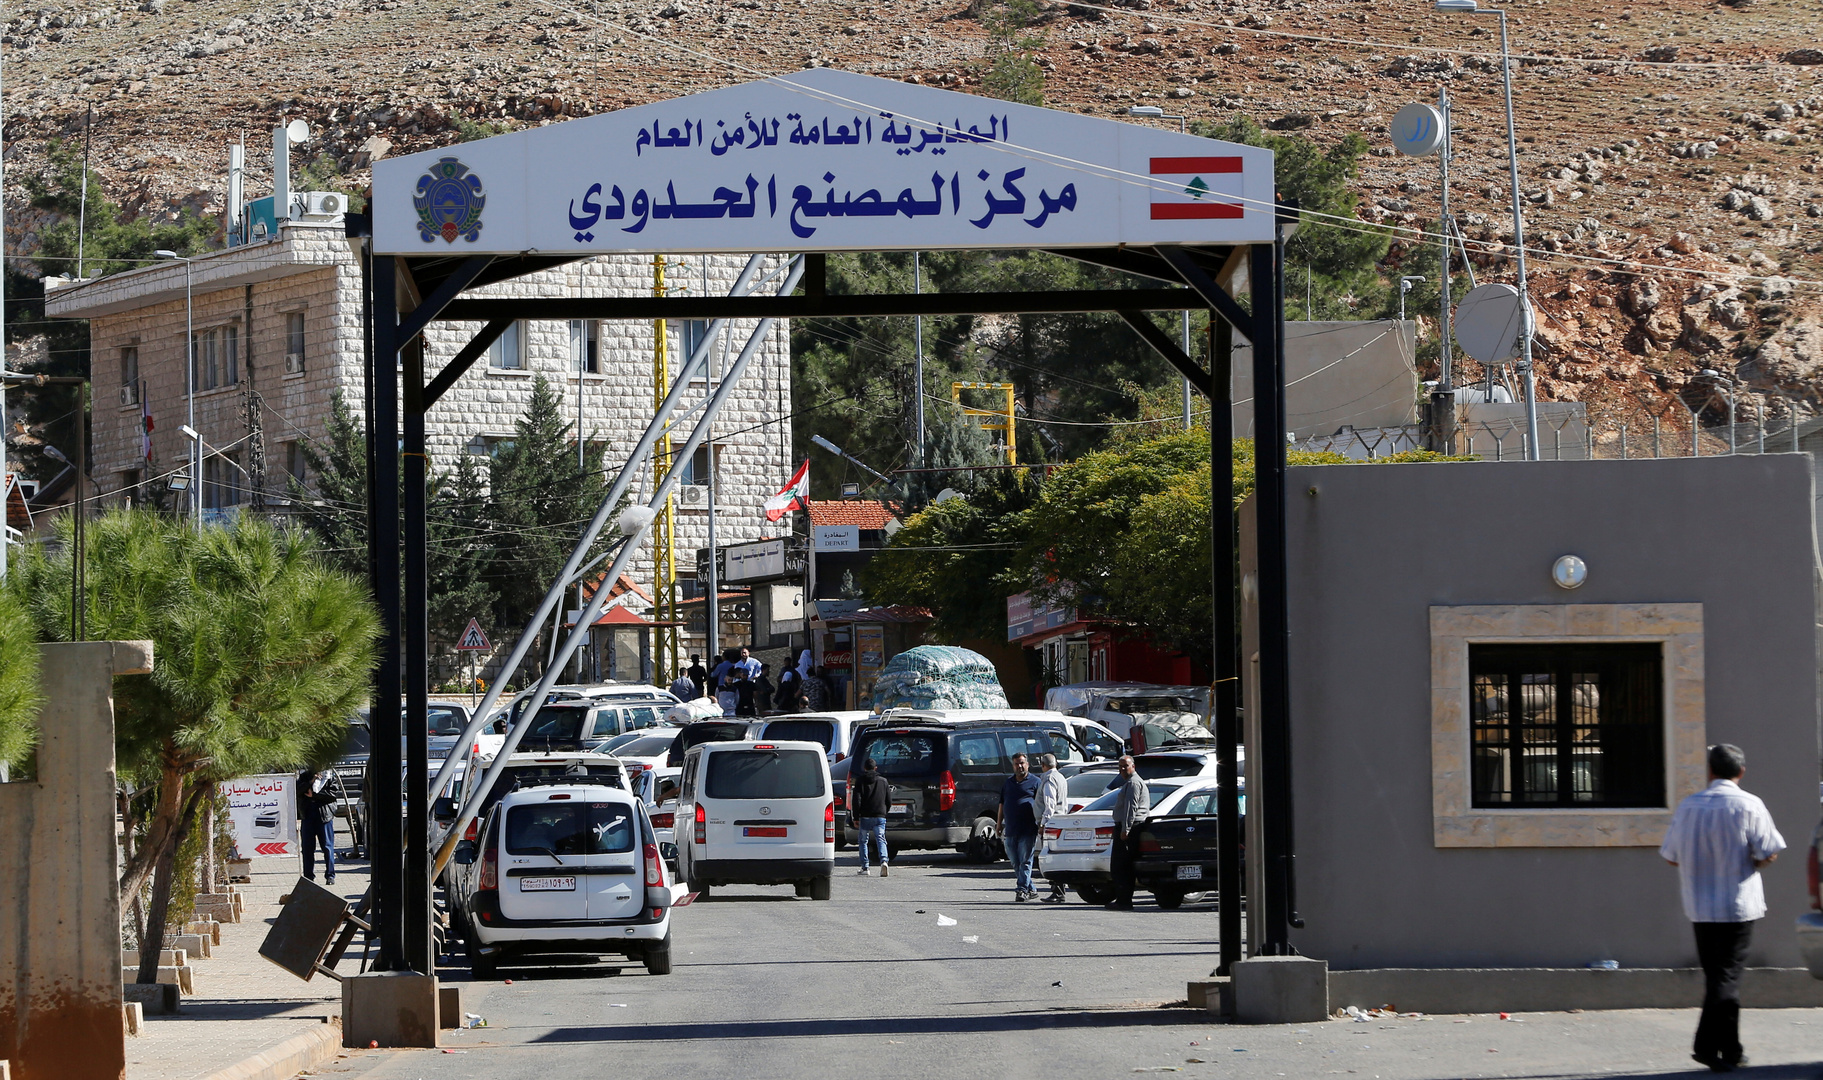 ملف إغلاق المعابر غير الشرعية يثير جدلا في لبنان والحكومة تتمسك بموقفها